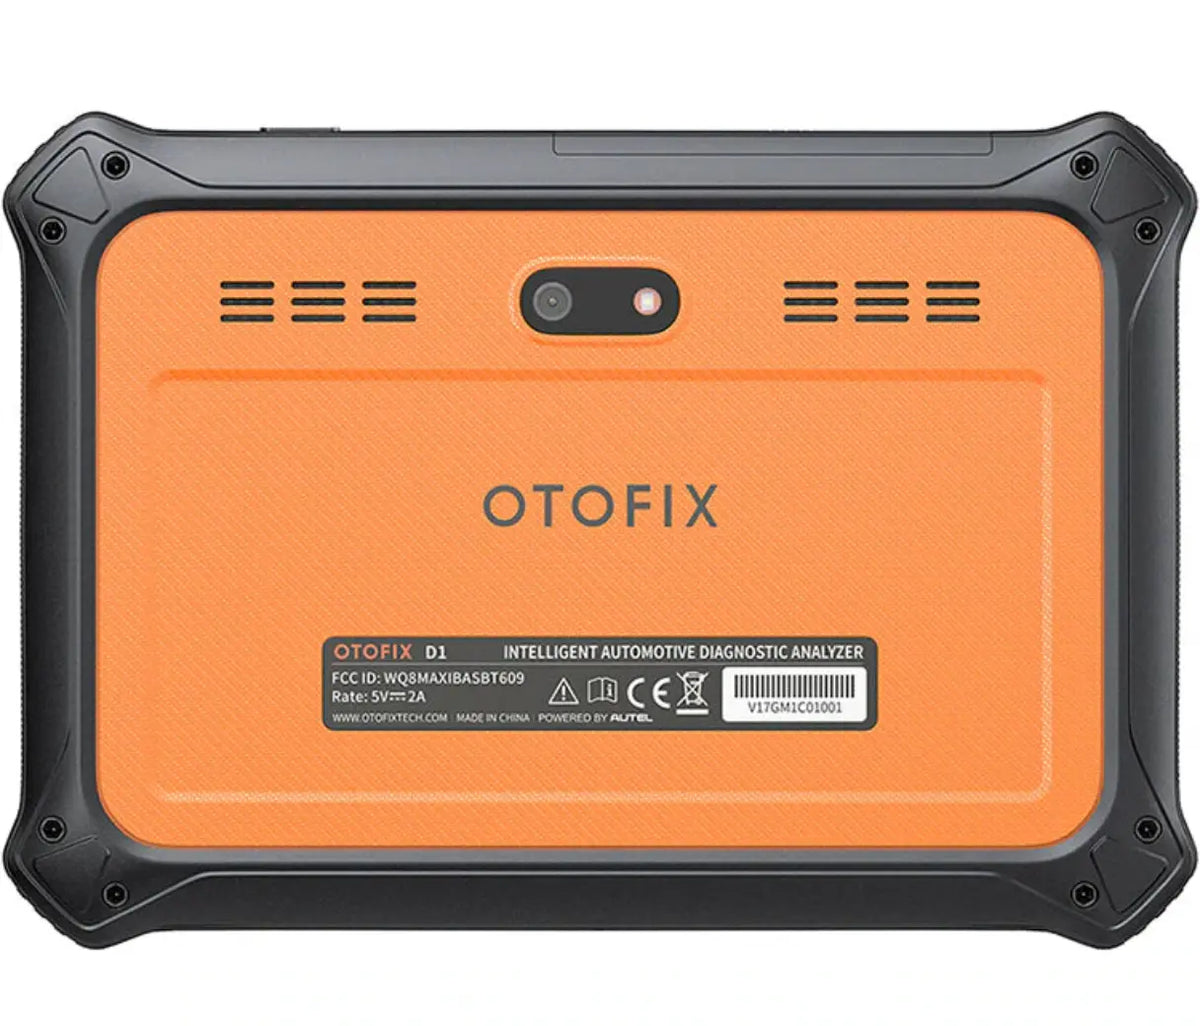 OTOFIX D1 Autel Professional Diagnostic Scan Tool